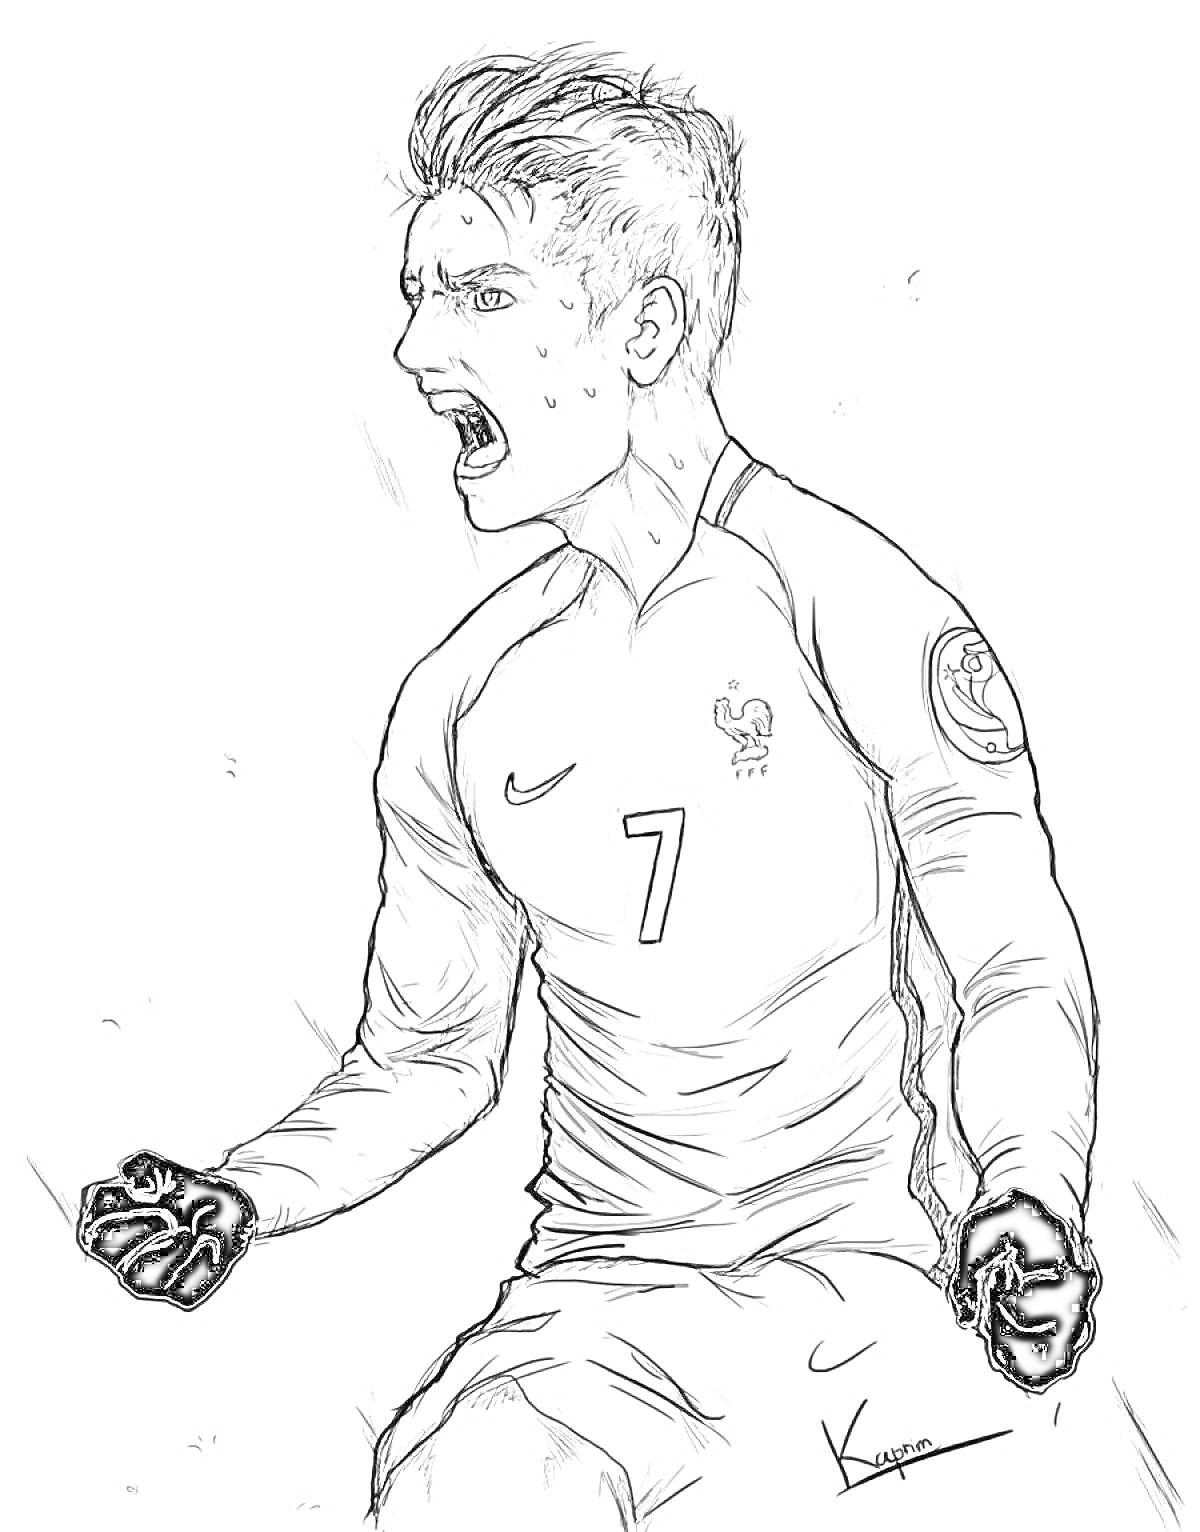 Футболист, кричащий от радости, в форме сборной Франции с номером 7 на груди, с сжатыми кулаками и в черных перчатках